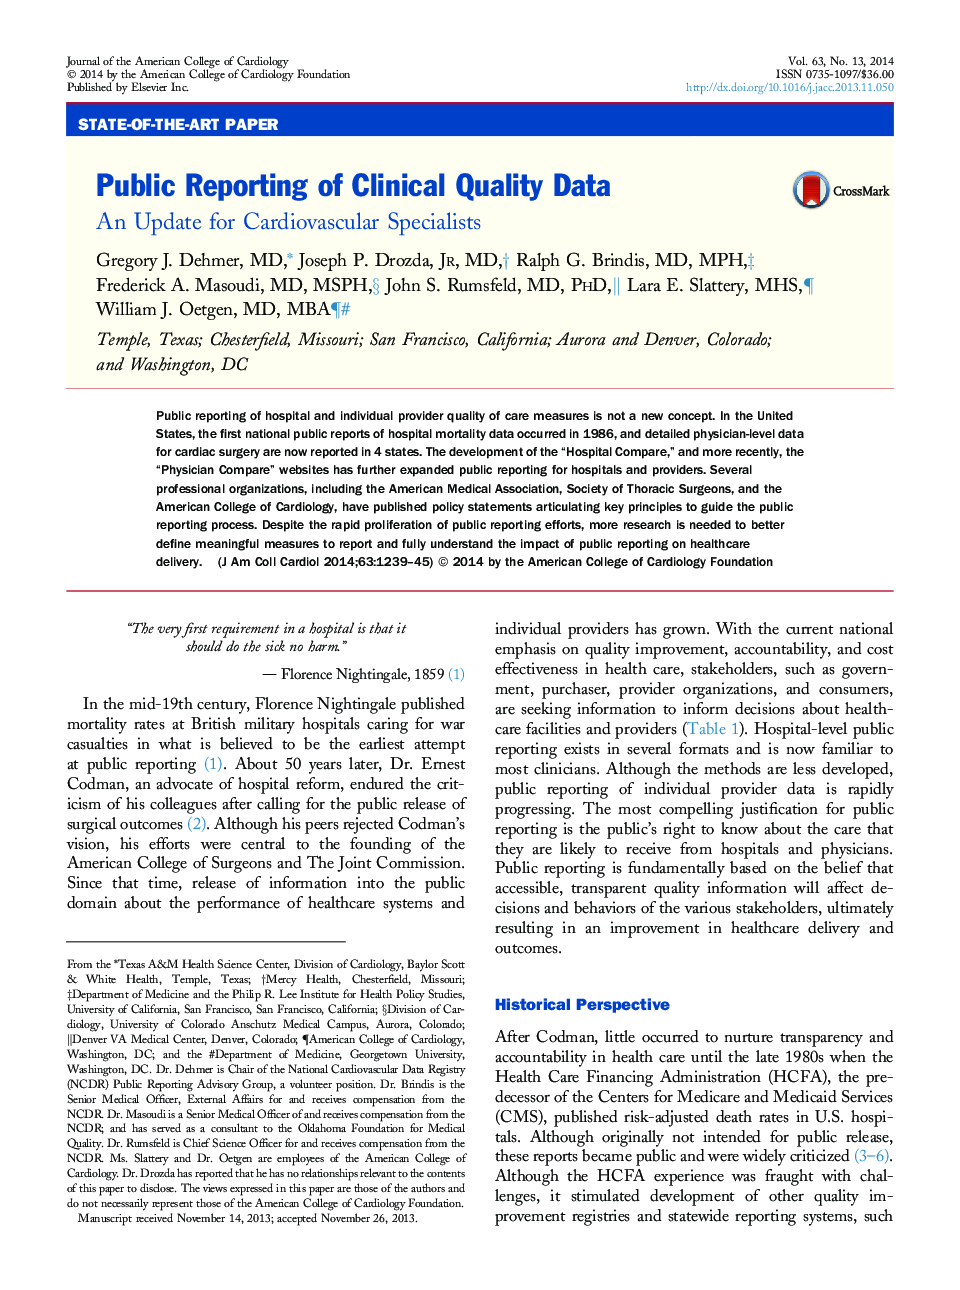 گزارش عمومی از داده های بالینی کیفیت: به روز رسانی برای متخصصان قلب و عروق 